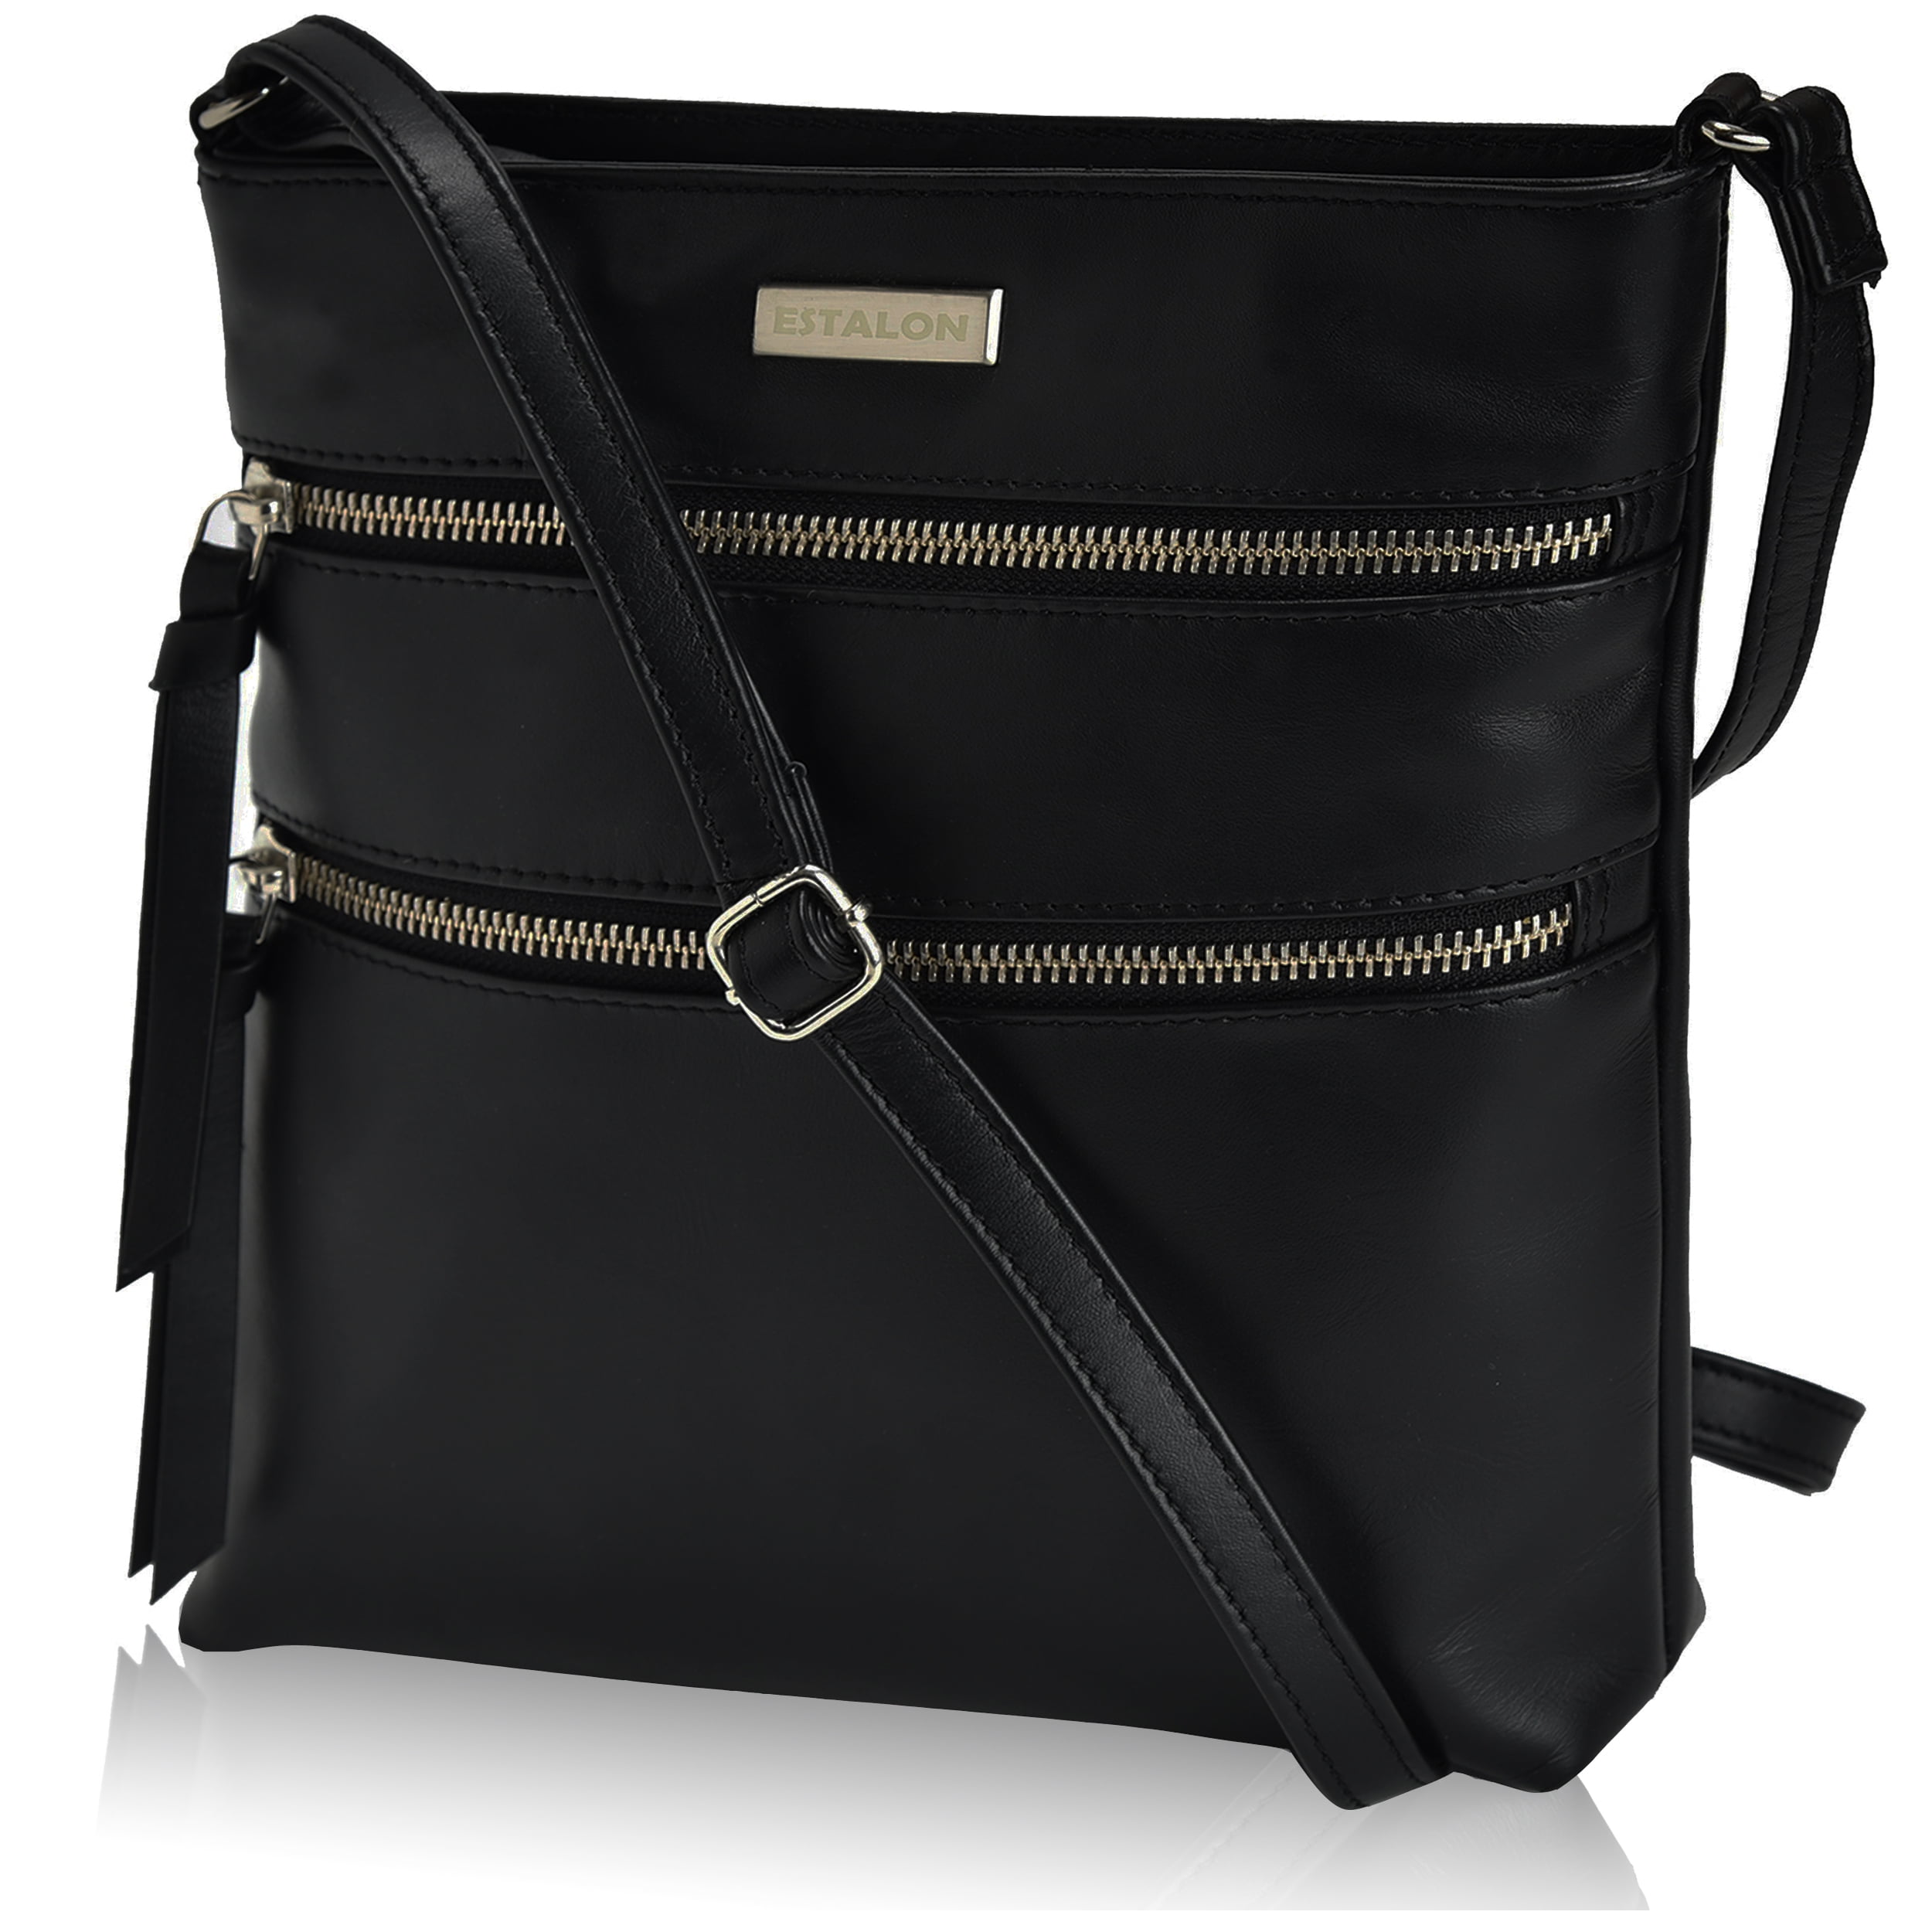 Naples Bag co. Paisley Quilted Over Shoulder Purse, Handbag | eBay